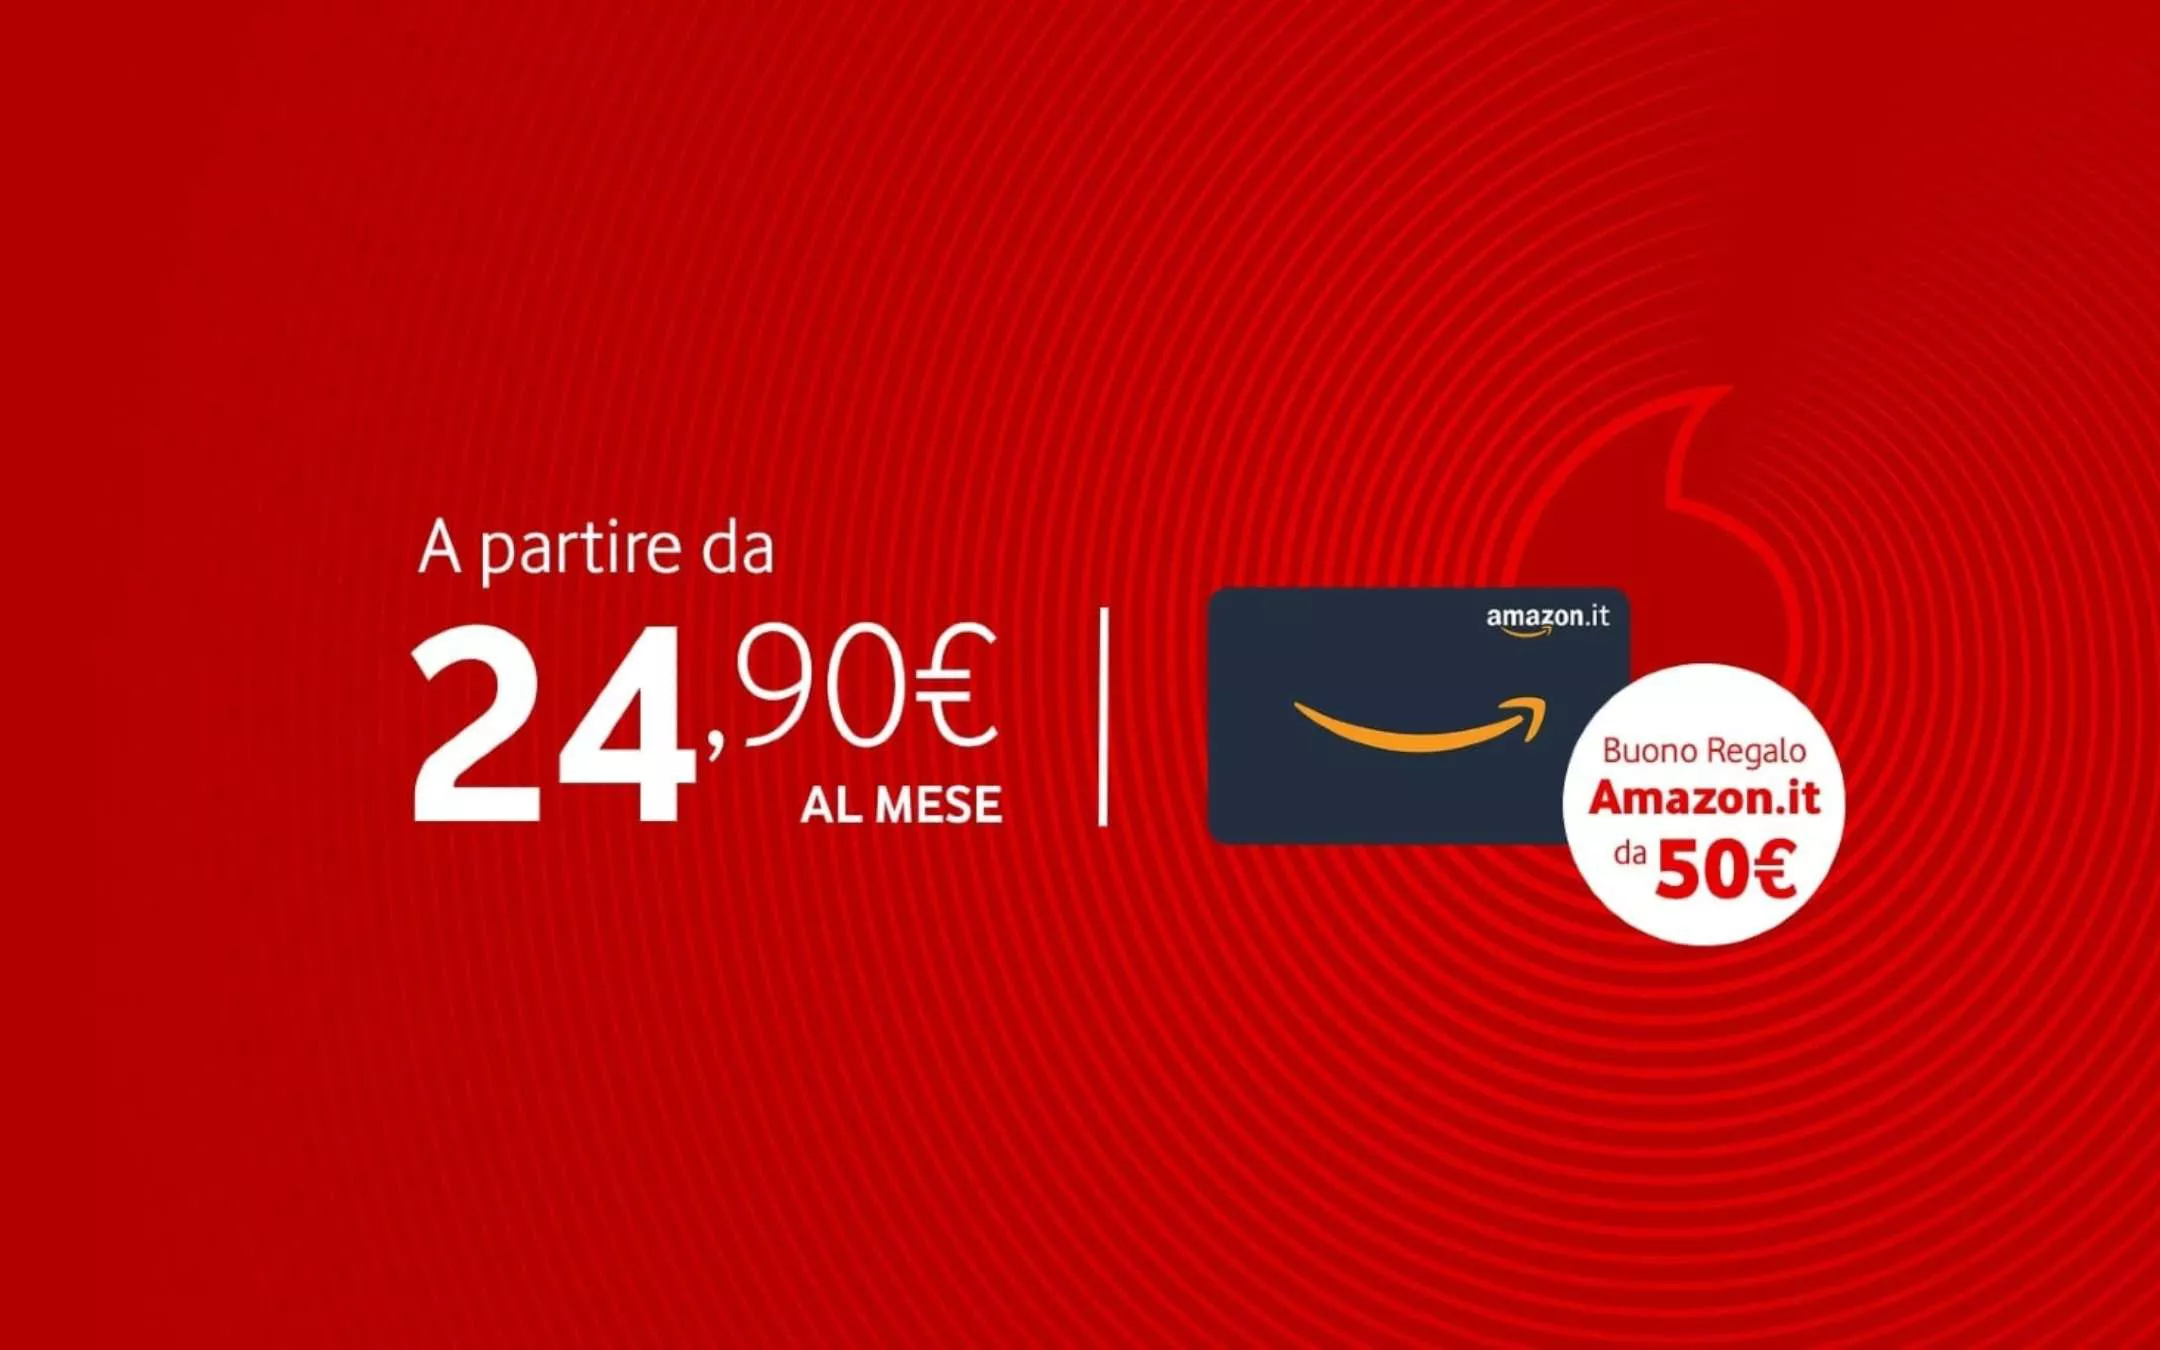 Confront sunrise unrelated Vodafone: Fibra a 24,90€ con Buono Amazon da 50€